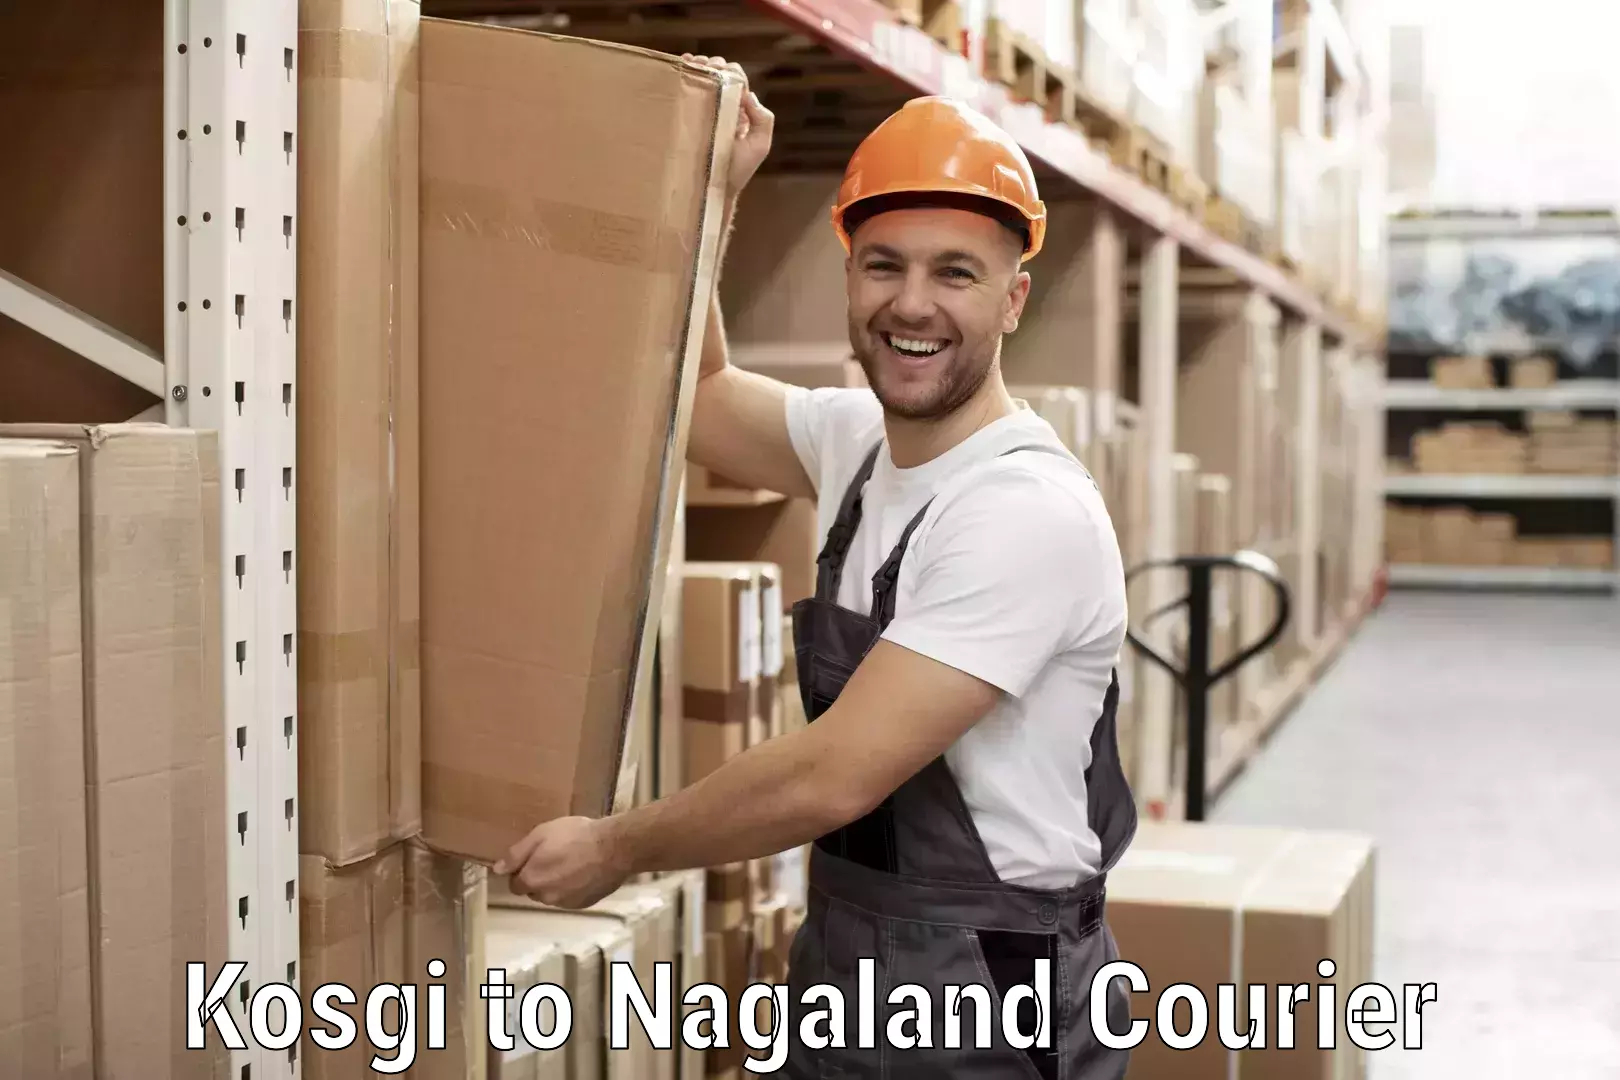 Individual parcel service Kosgi to Nagaland